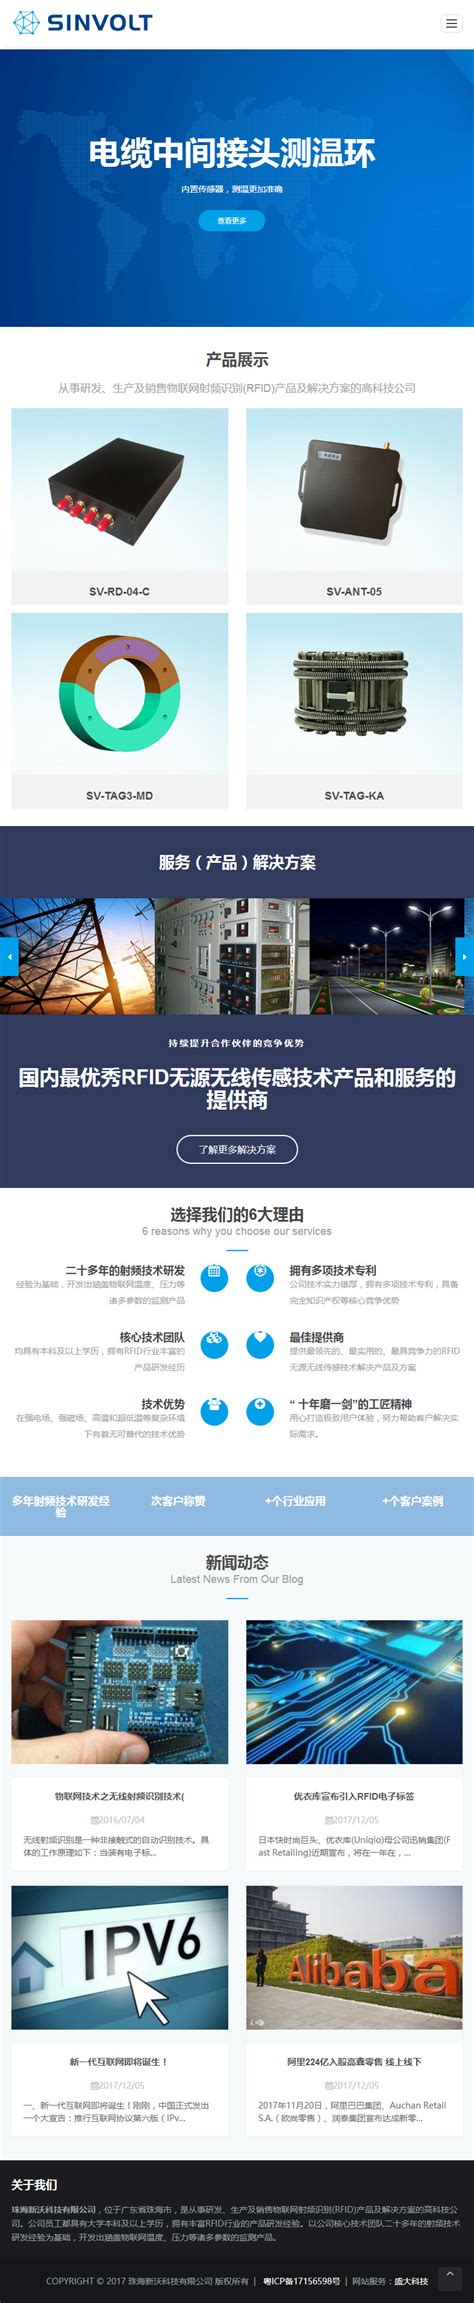 品牌官网_珠海专业建站优化公司「了了网」